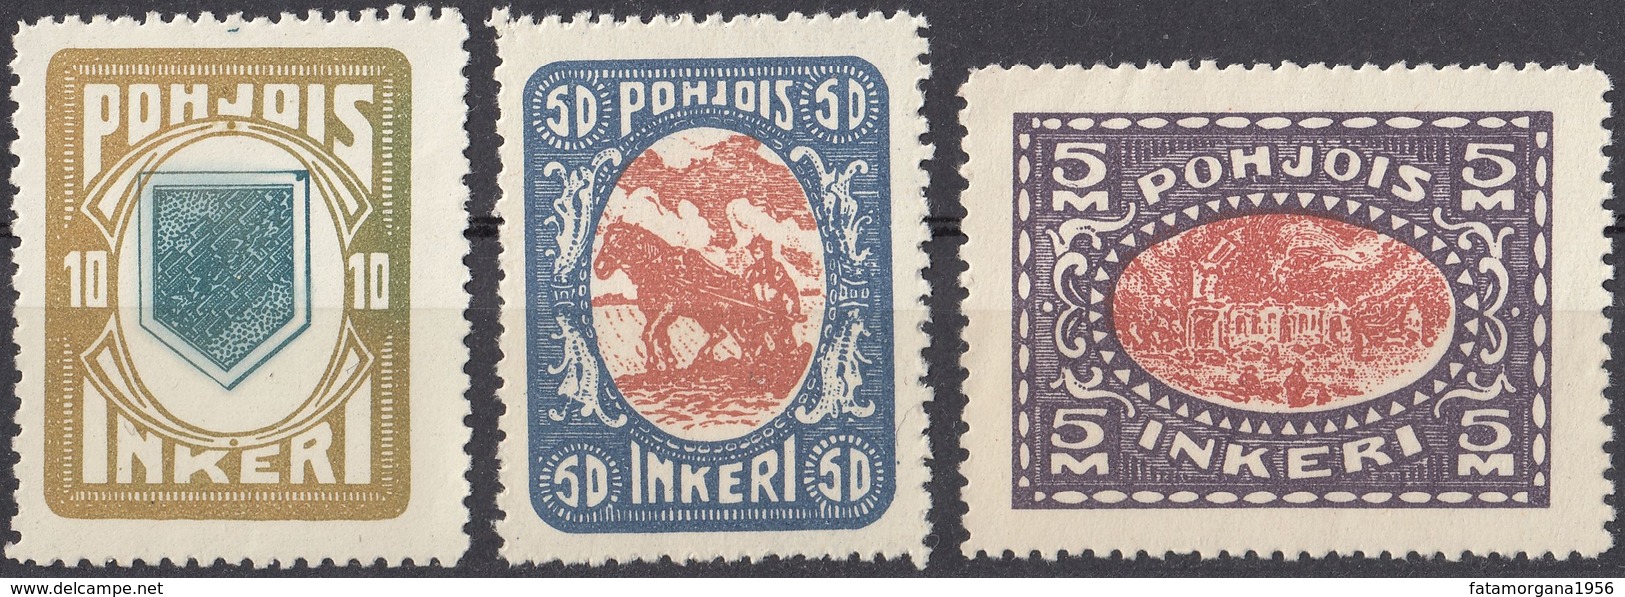 INGRIA - 1920 - Lotto Di 3 Valori Nuov1 Senza Linguella: Yvert 8 (seconda Scelta), 10 E 13. - Local Post Stamps